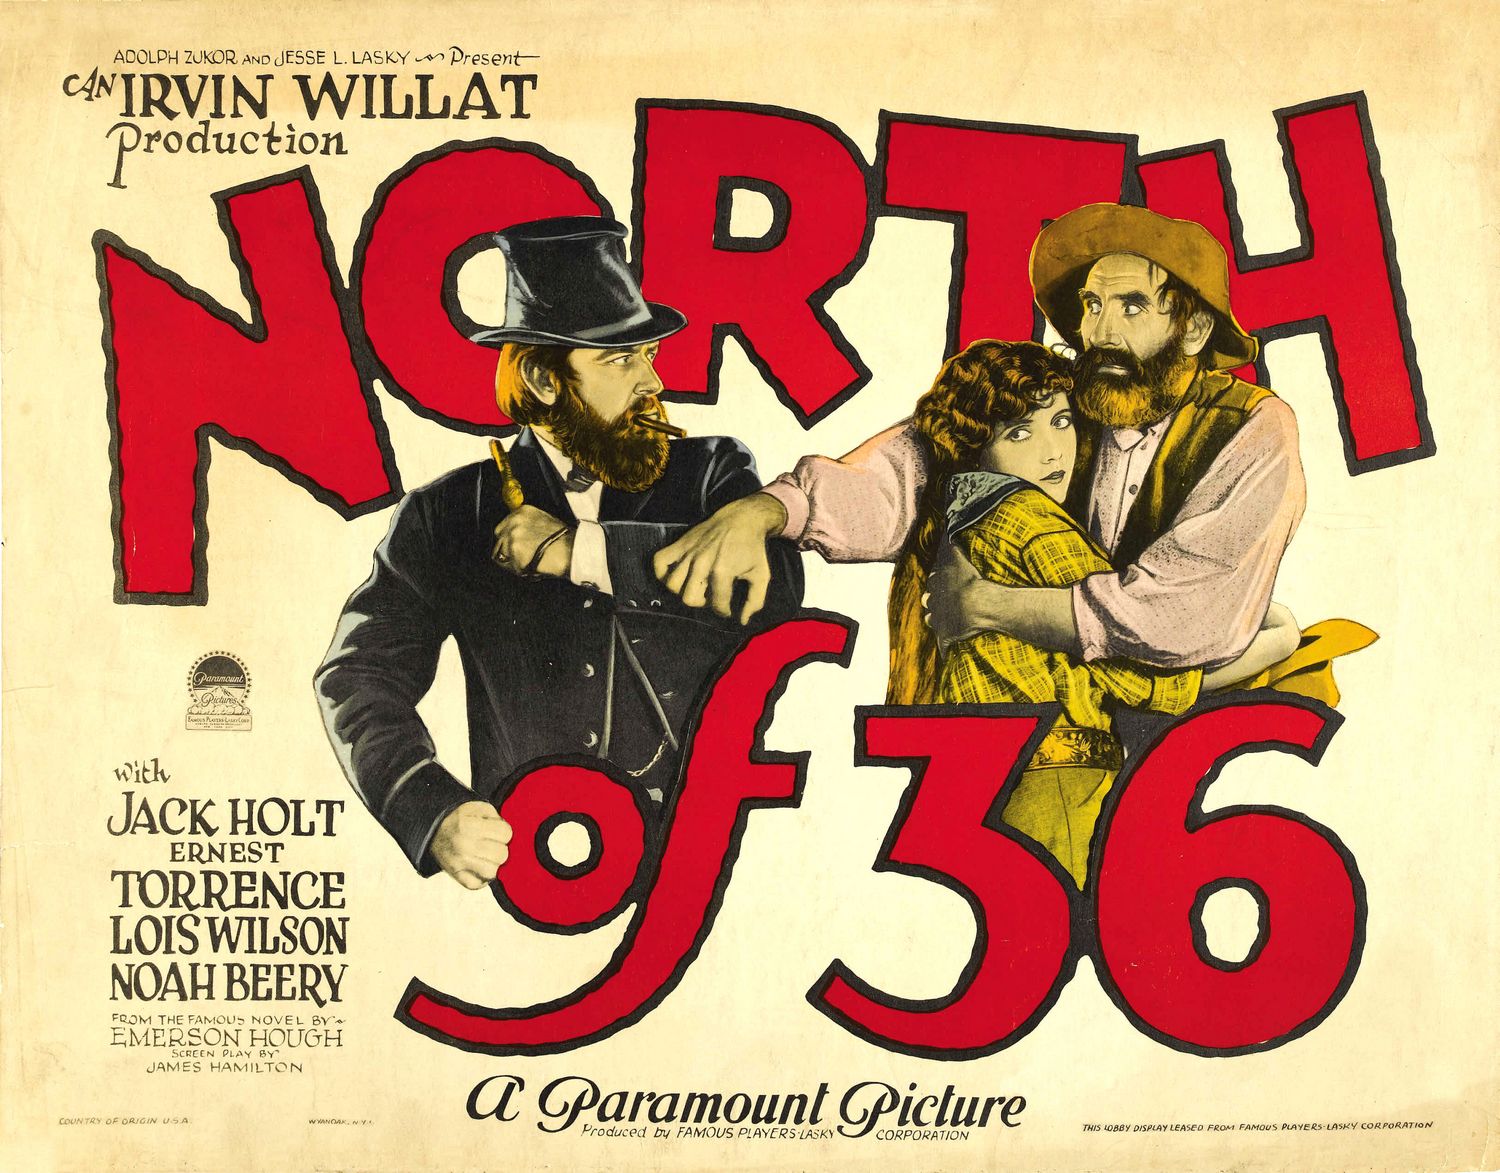 North of 36 movie